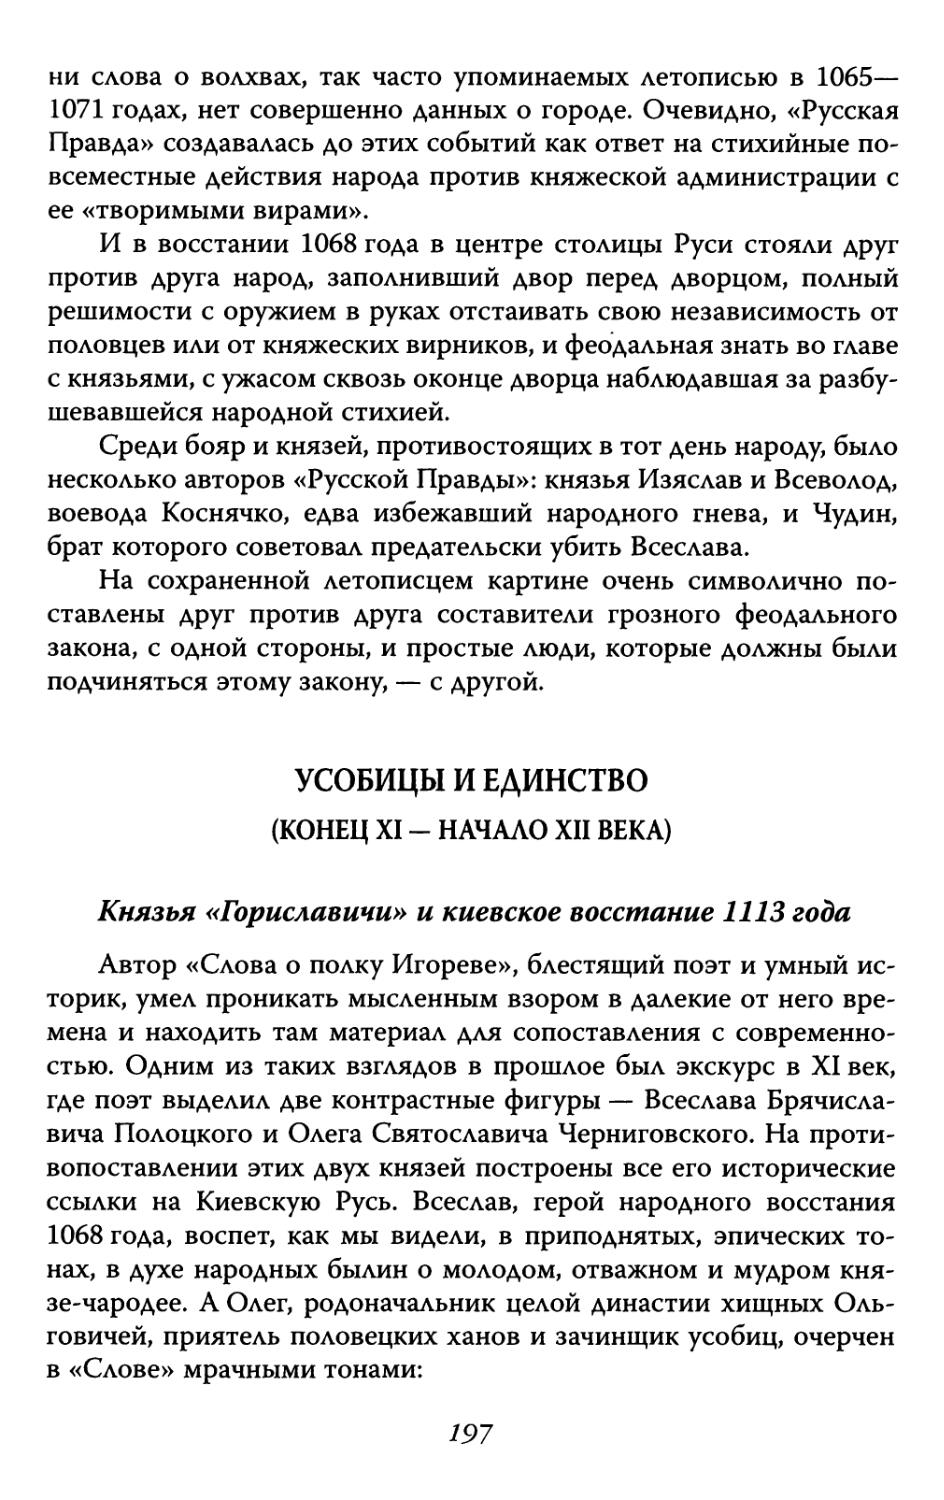 Князья «Гориславичи» и киевское восстание 1113 года